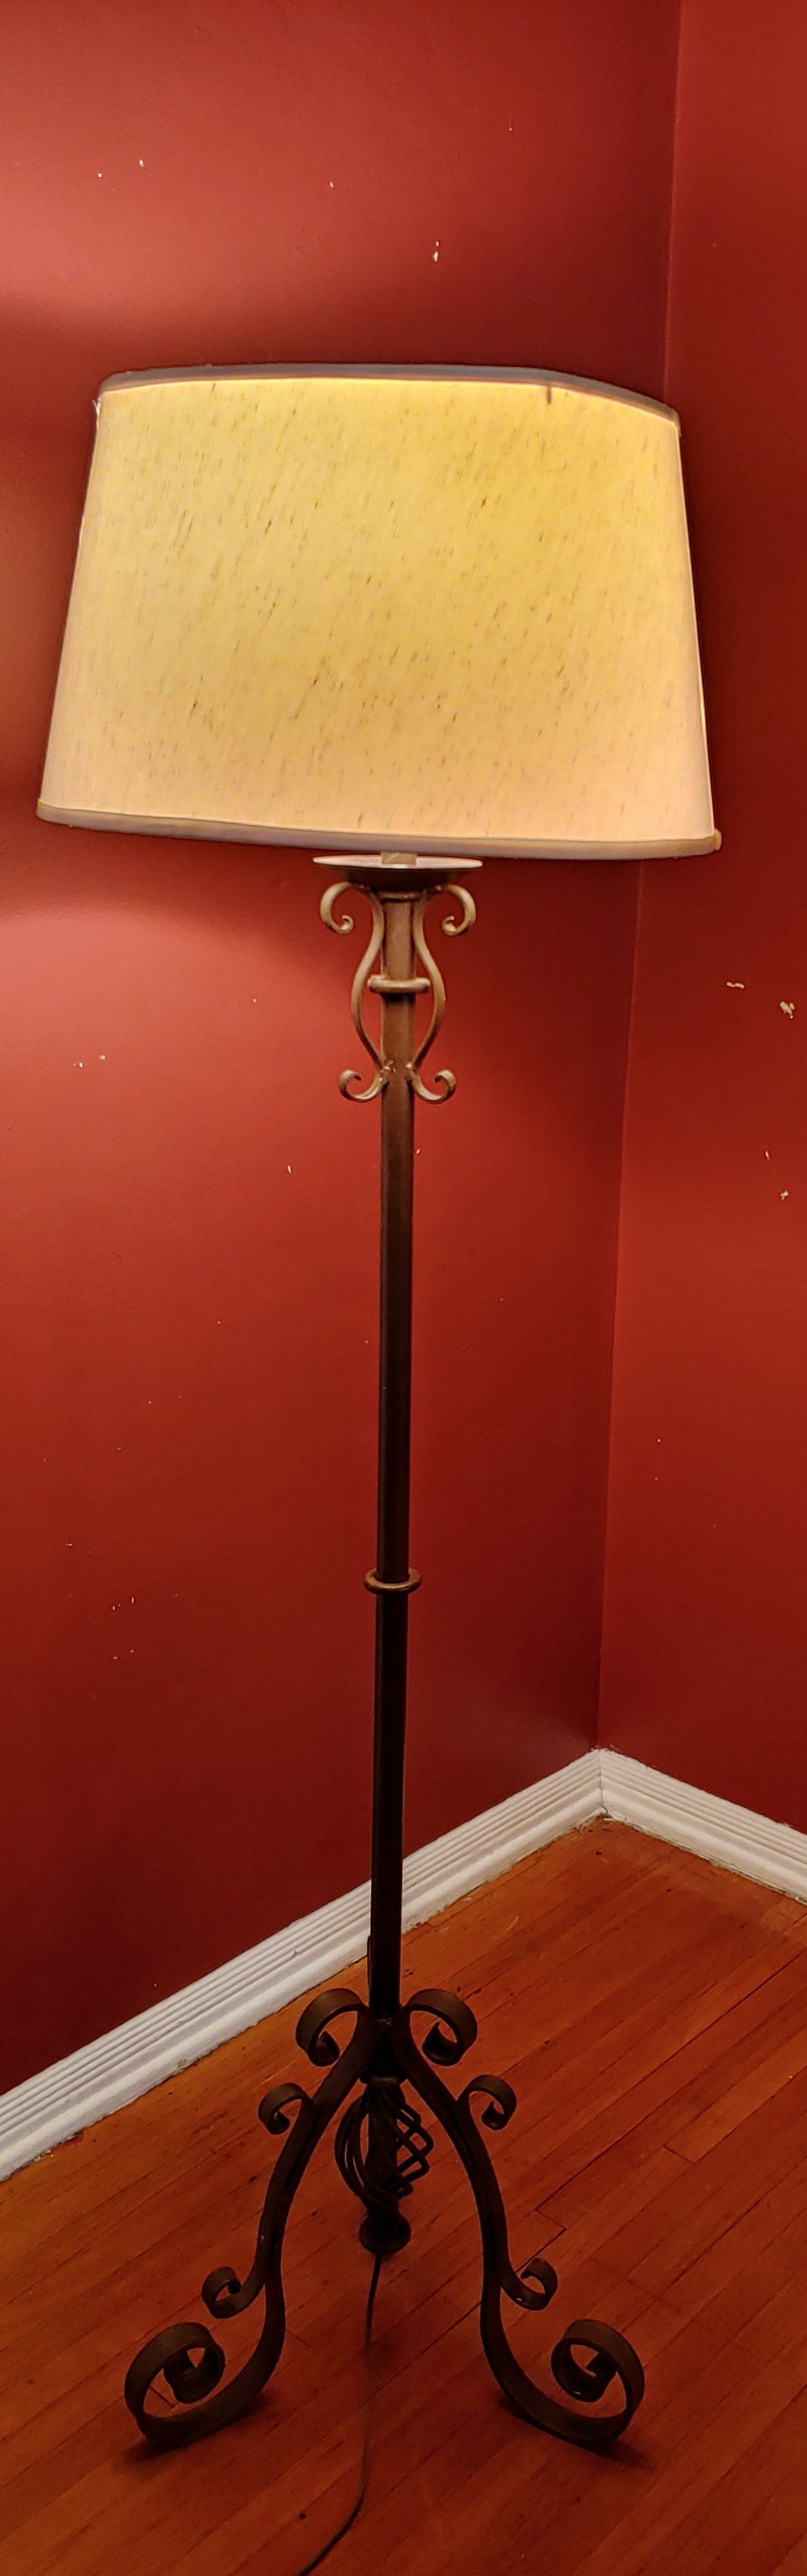 Wrought iron brown floor lamp